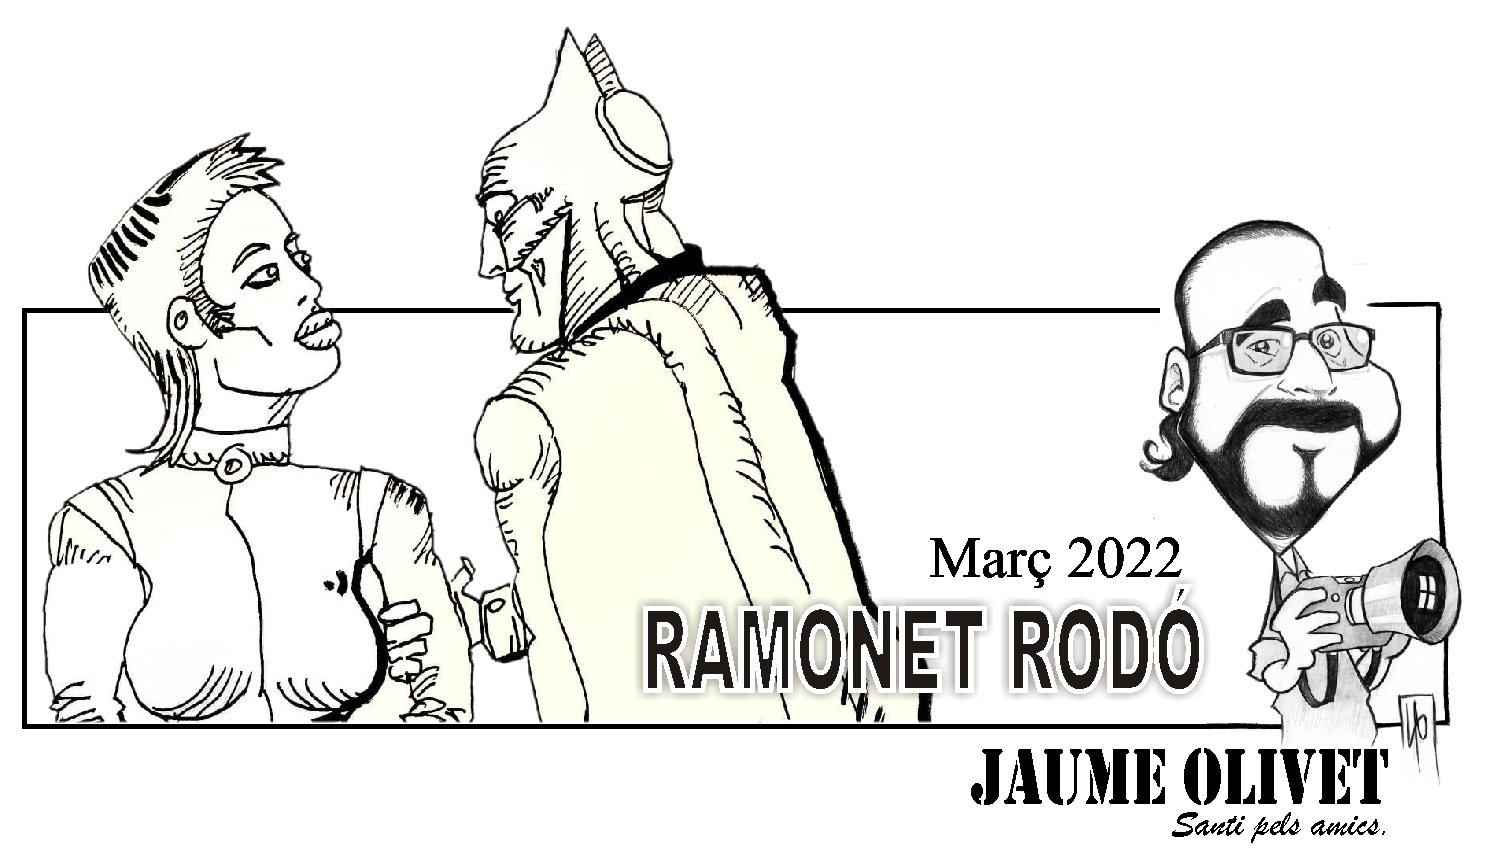 © Ramonet rodó 2022